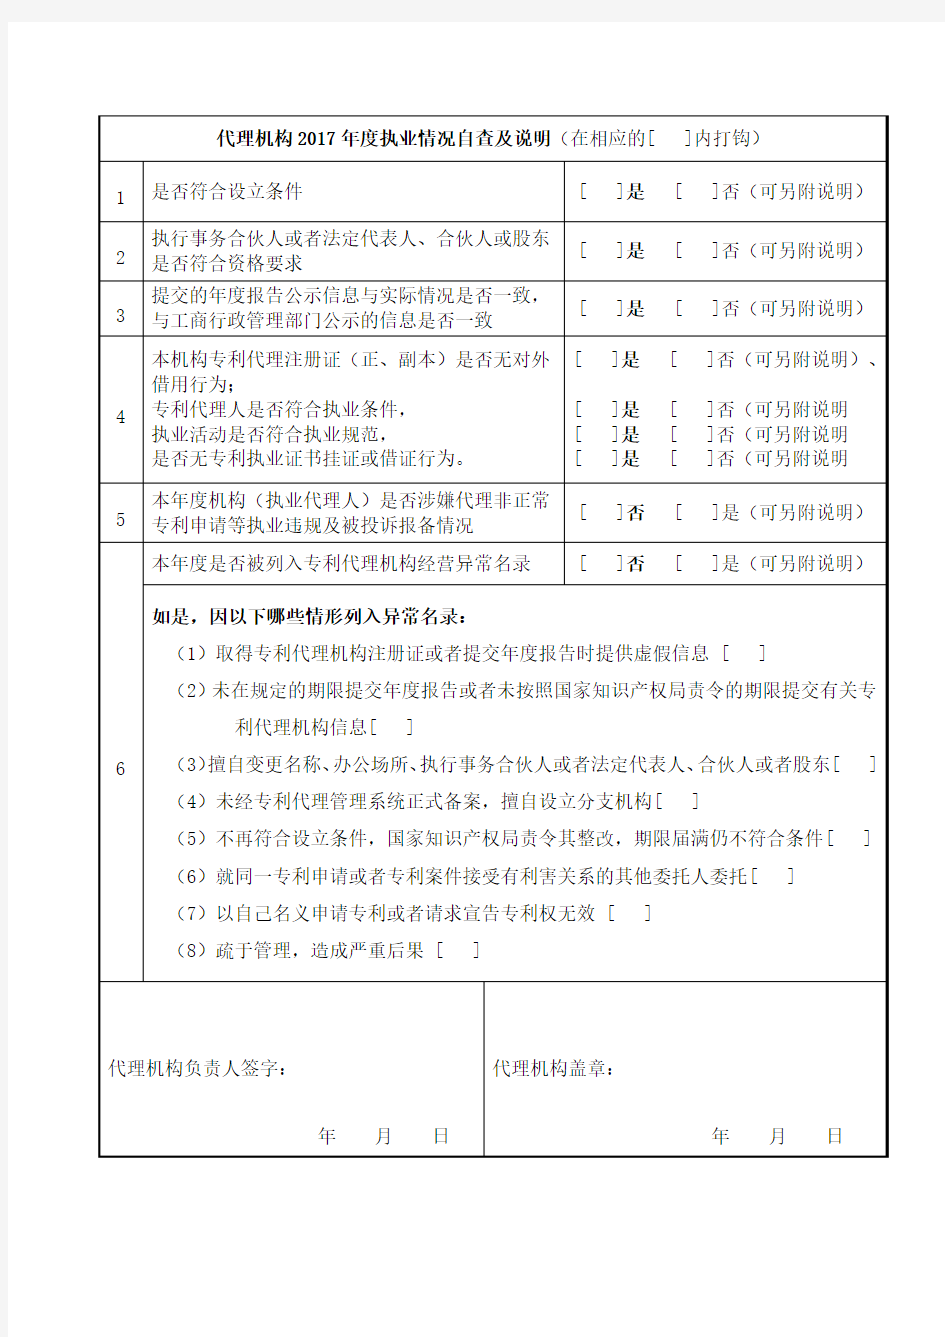 2018年广州市专利代理机构执业情况